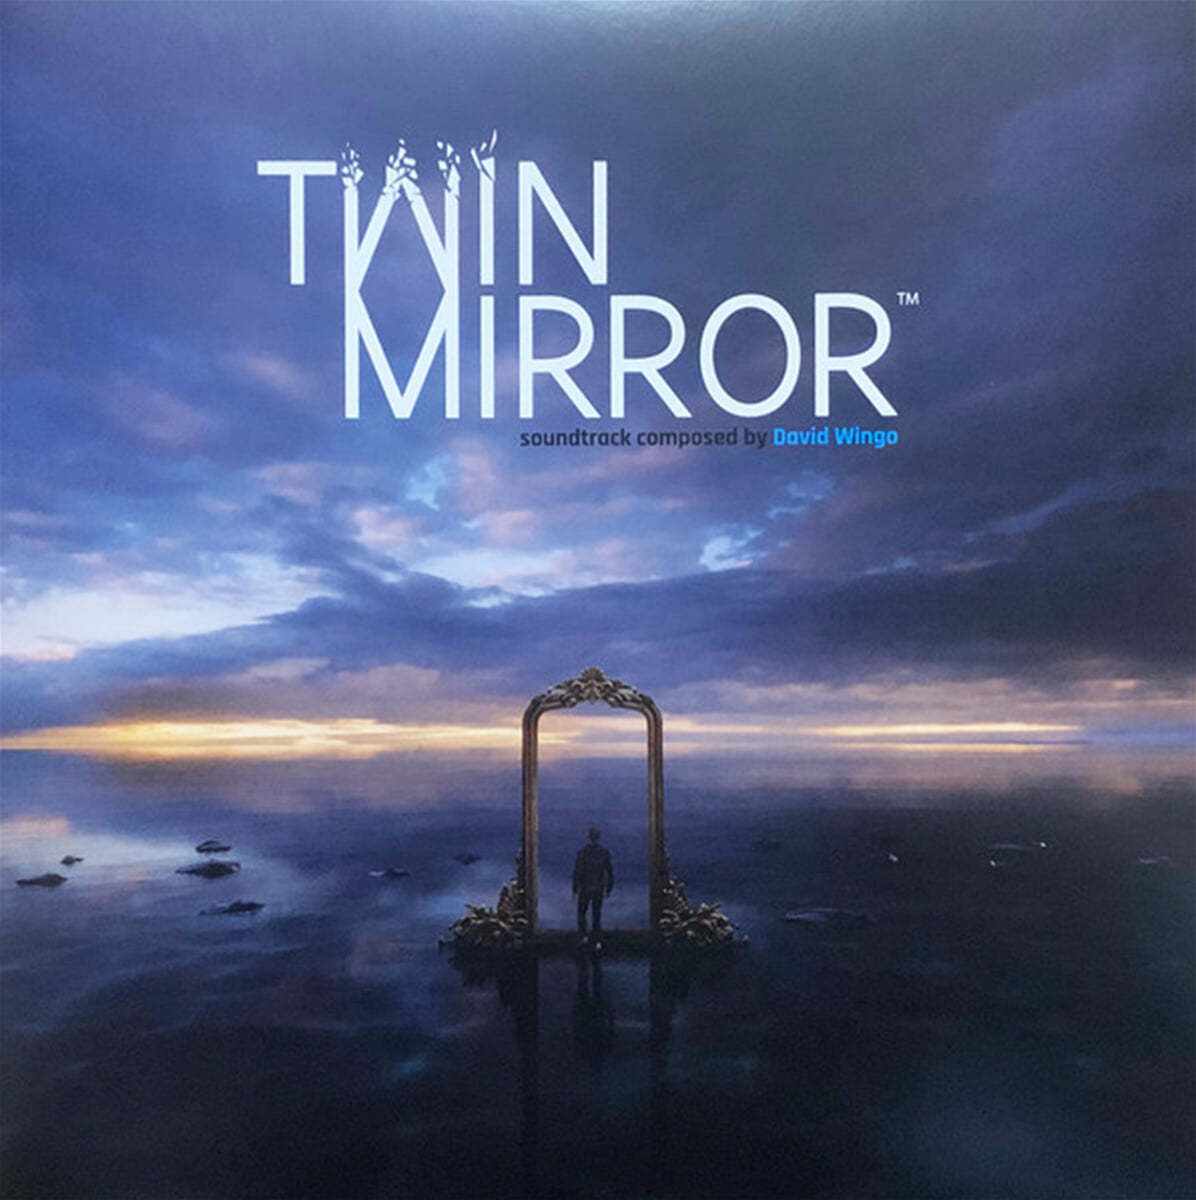 트윈 미러 게임음악 (Twin Mirror OST by David Wingo) [LP] 